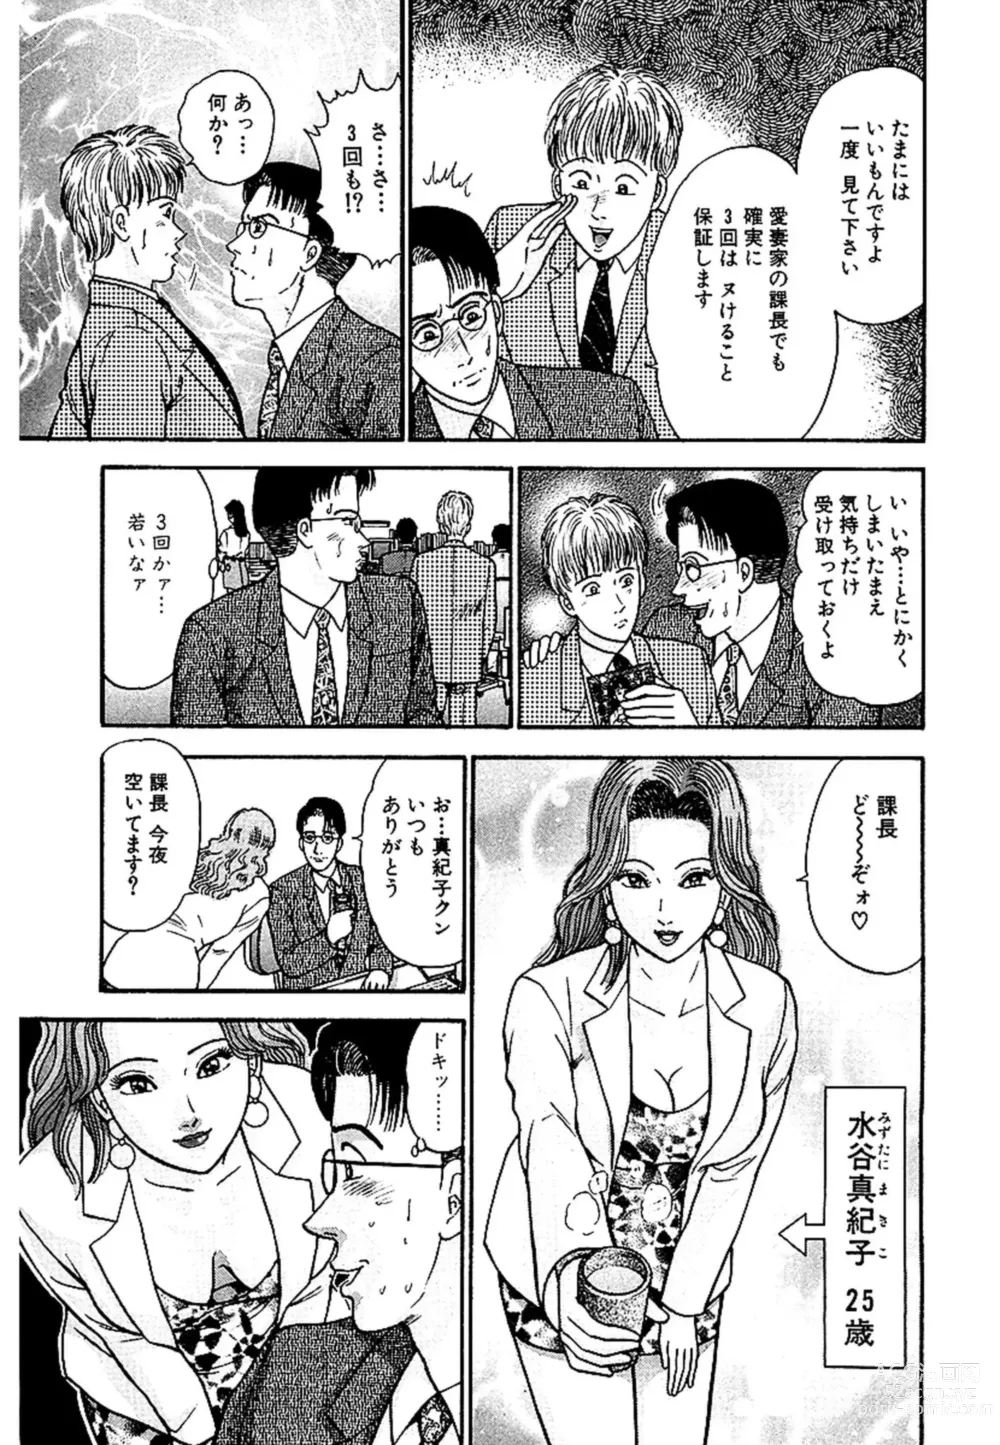 Page 6 of manga Sekkusuresu Shinsō-ban 1